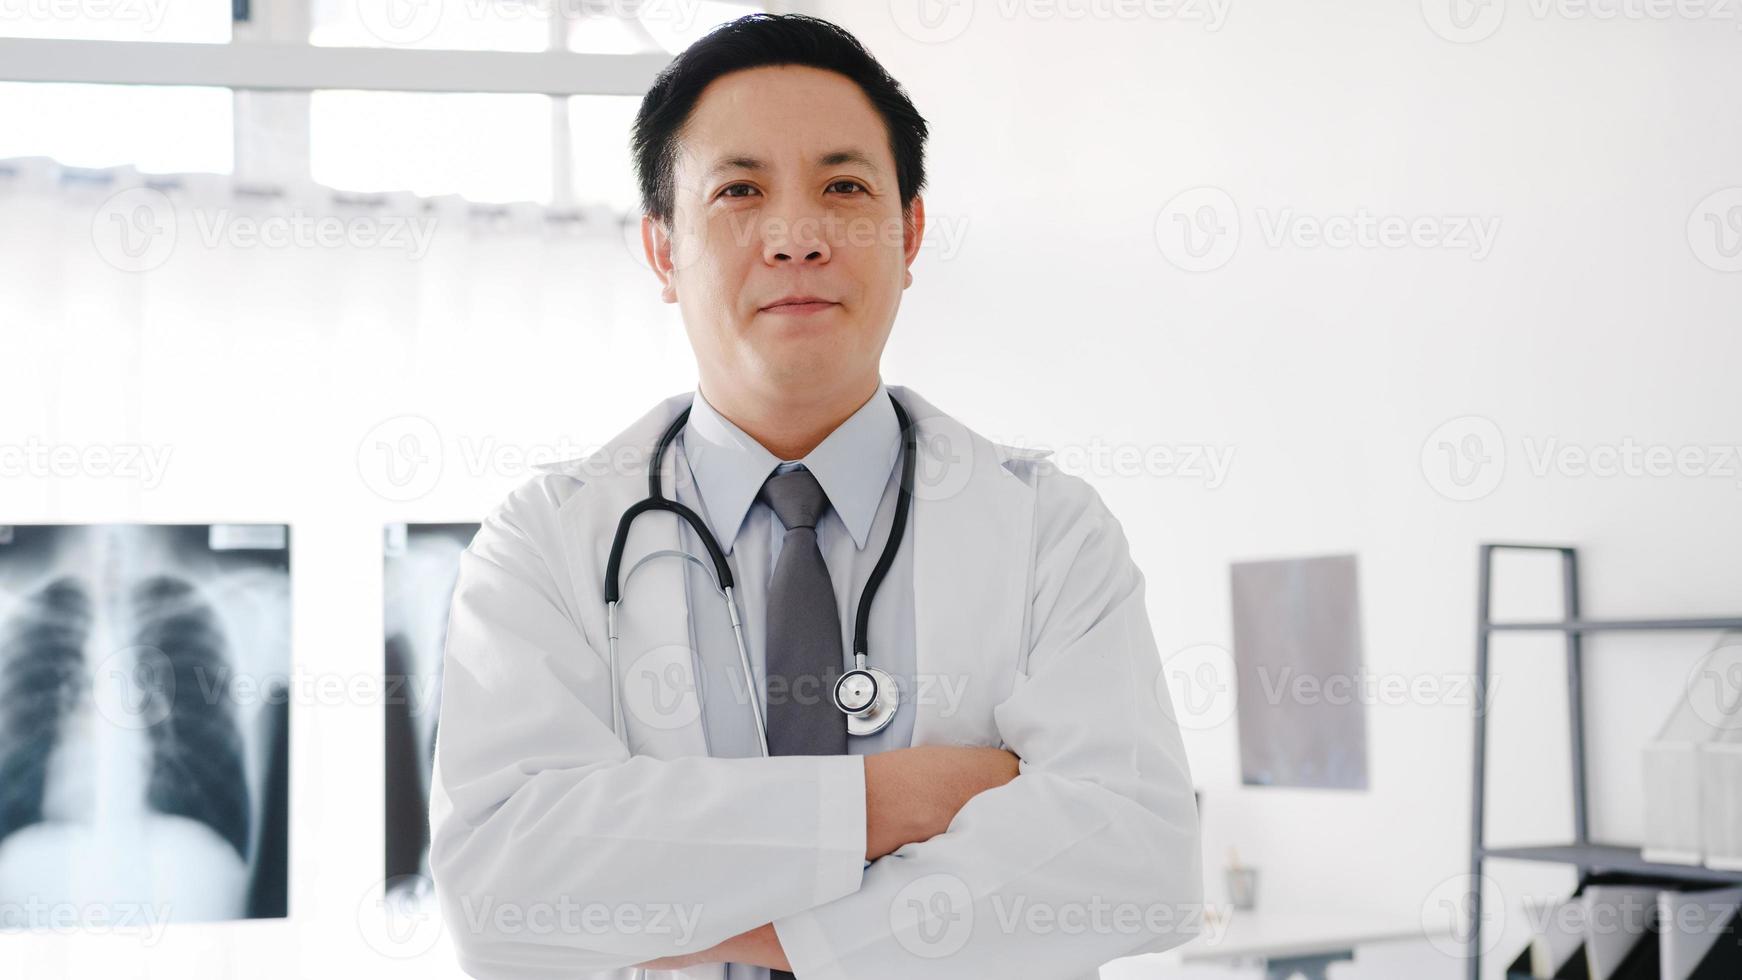 jeune médecin asiatique en uniforme médical blanc avec stéthoscope regardant la caméra, le sourire et les bras croisés lors d'une vidéoconférence avec un patient dans un hôpital de santé. concept de conseil et de thérapie. photo